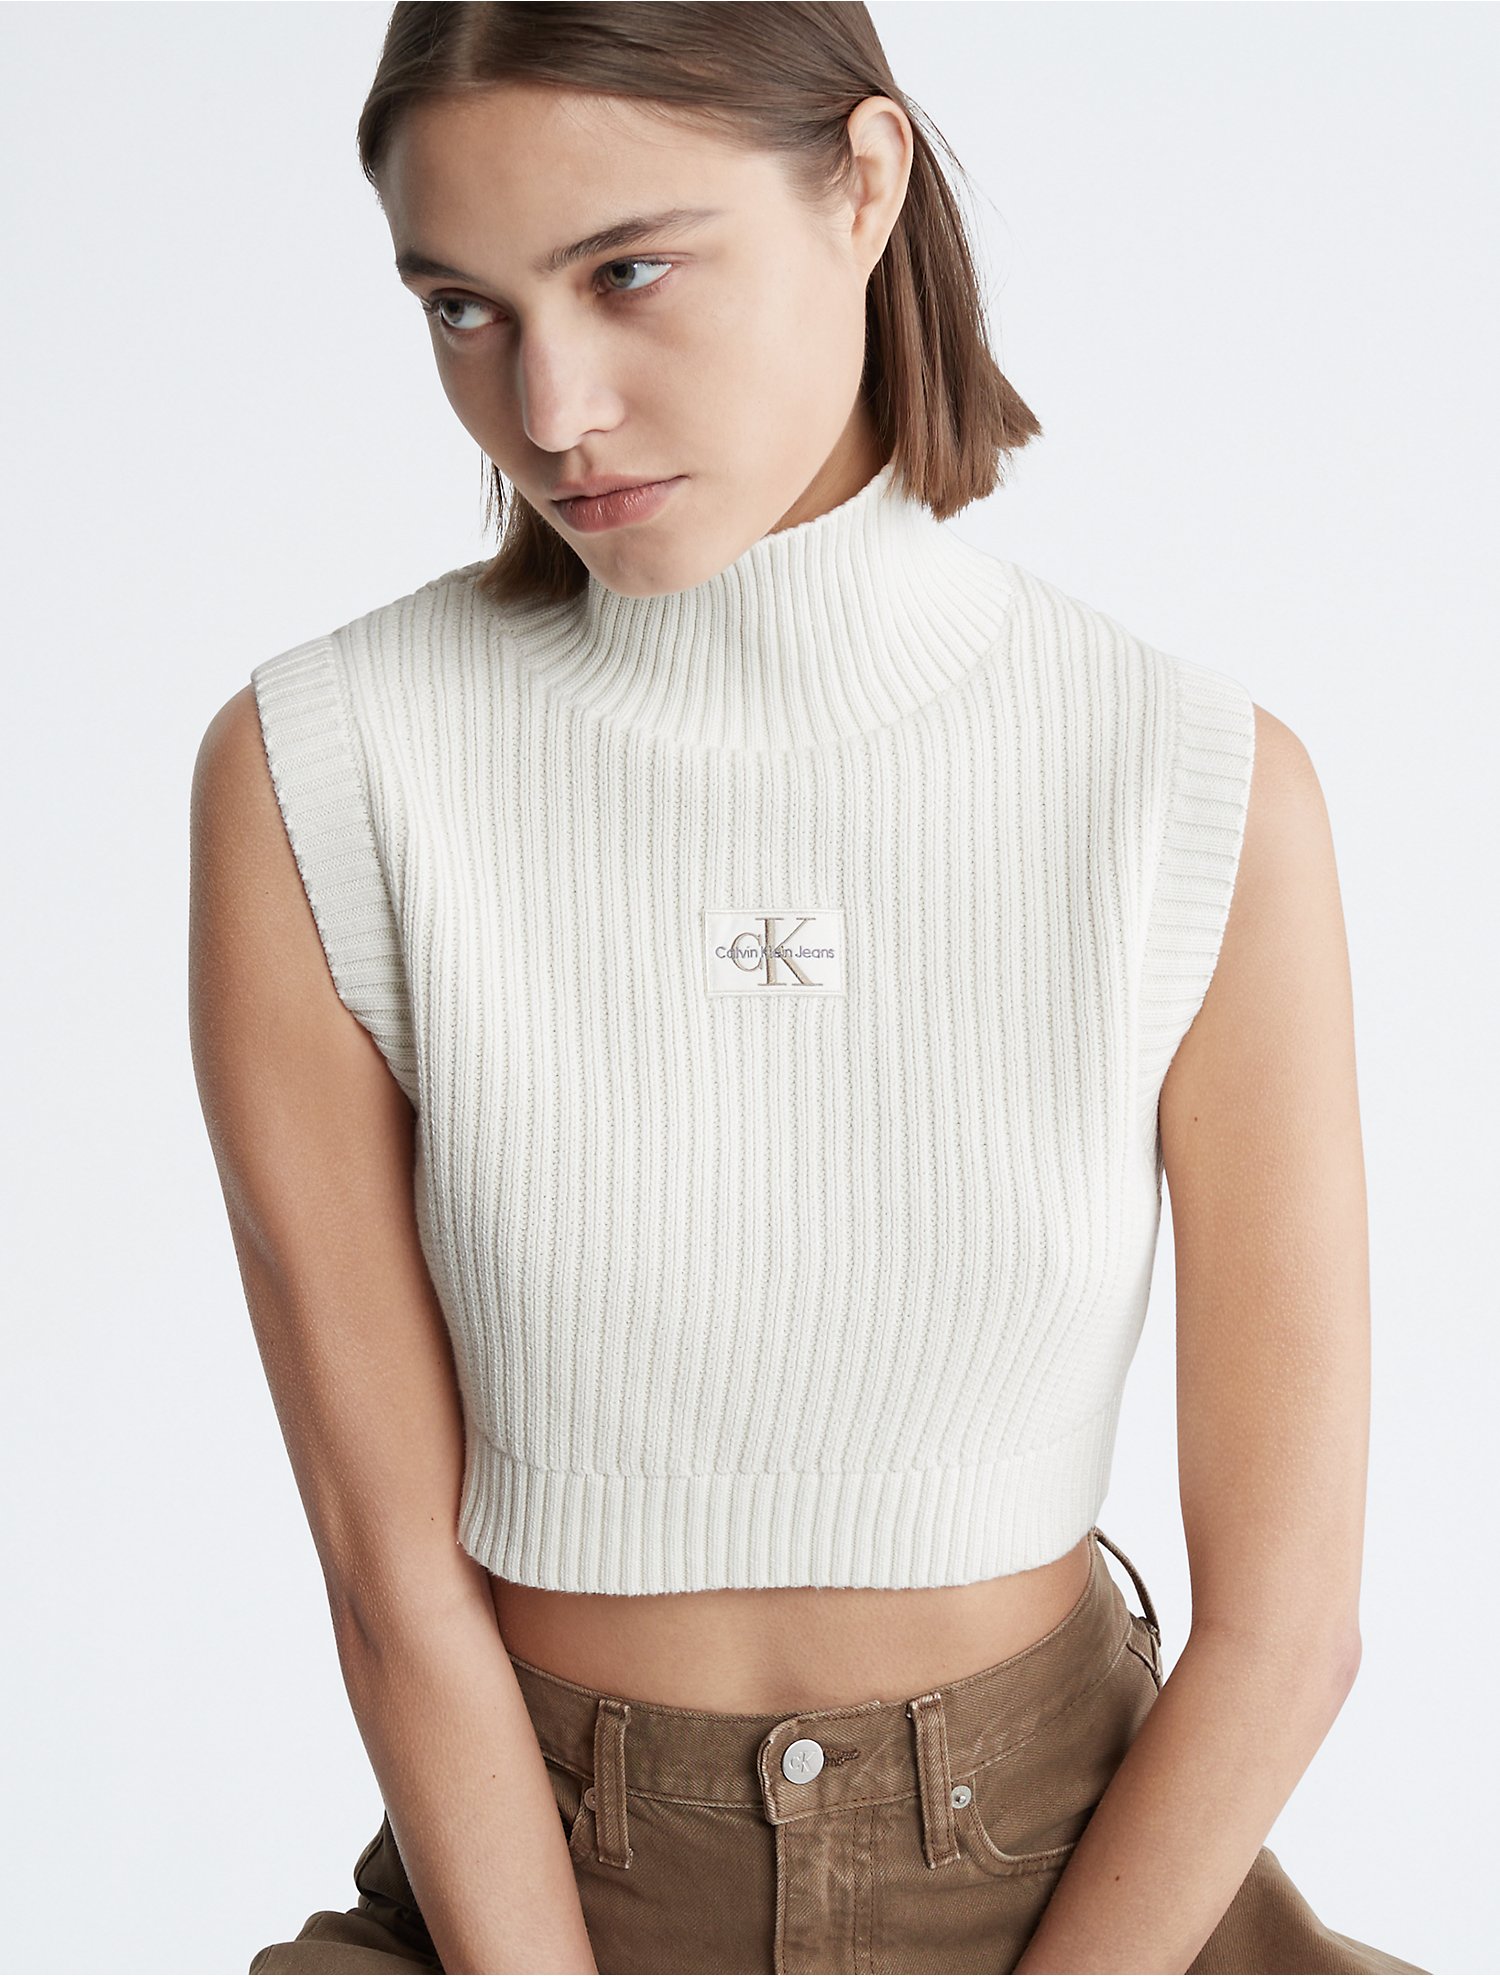 Skinne Fascinate Nævne Cropped Turtleneck Sweater Vest | Calvin Klein